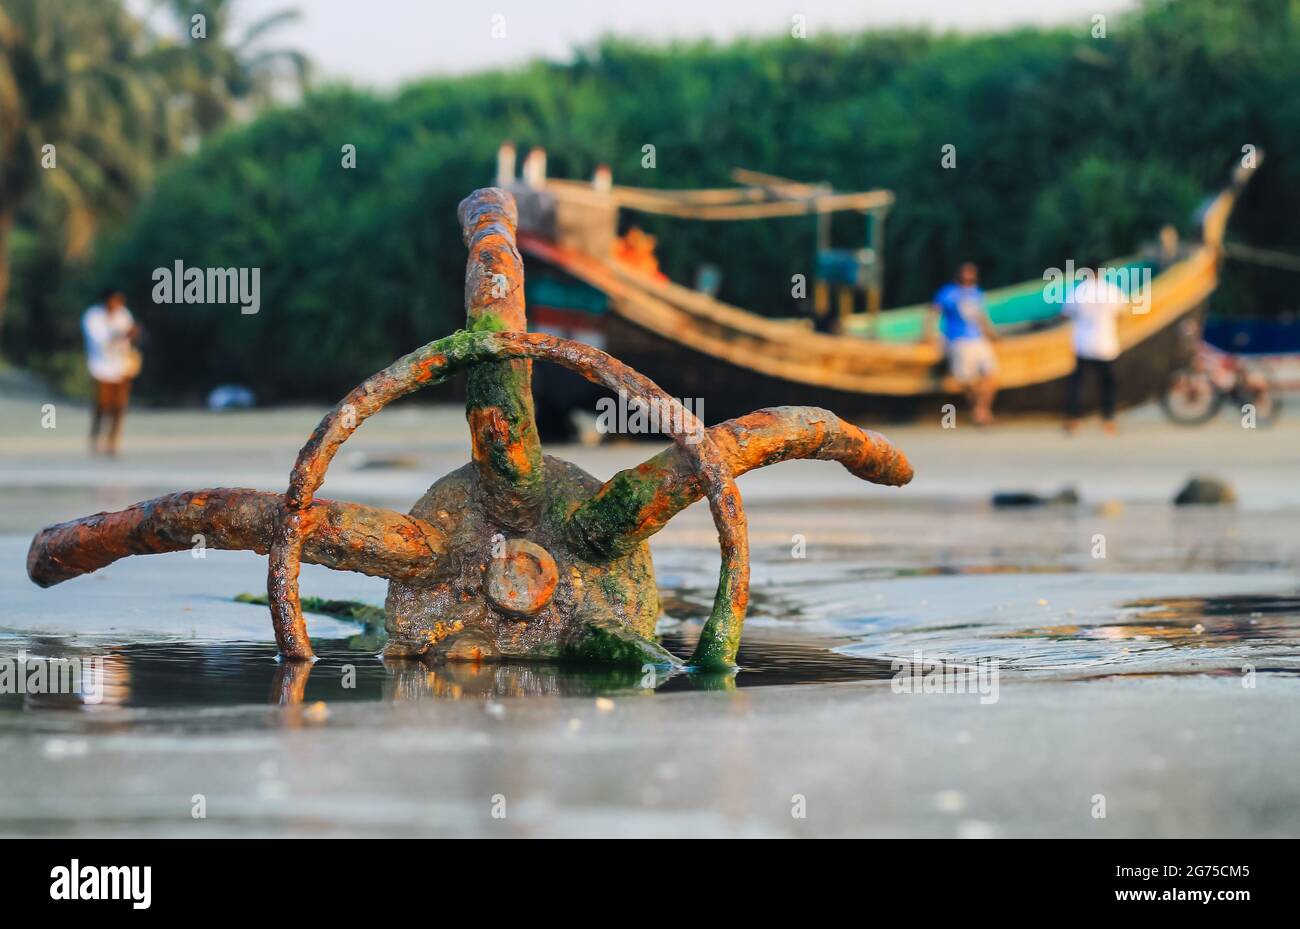 Un bateau de pêche ancré sur la plage de l'île Saint-Martin, au Bangladesh. Bateau de pêche rouillé ancre traditionnelle sur une plage au bord de la mer. Ancrage rouillé. Banque D'Images